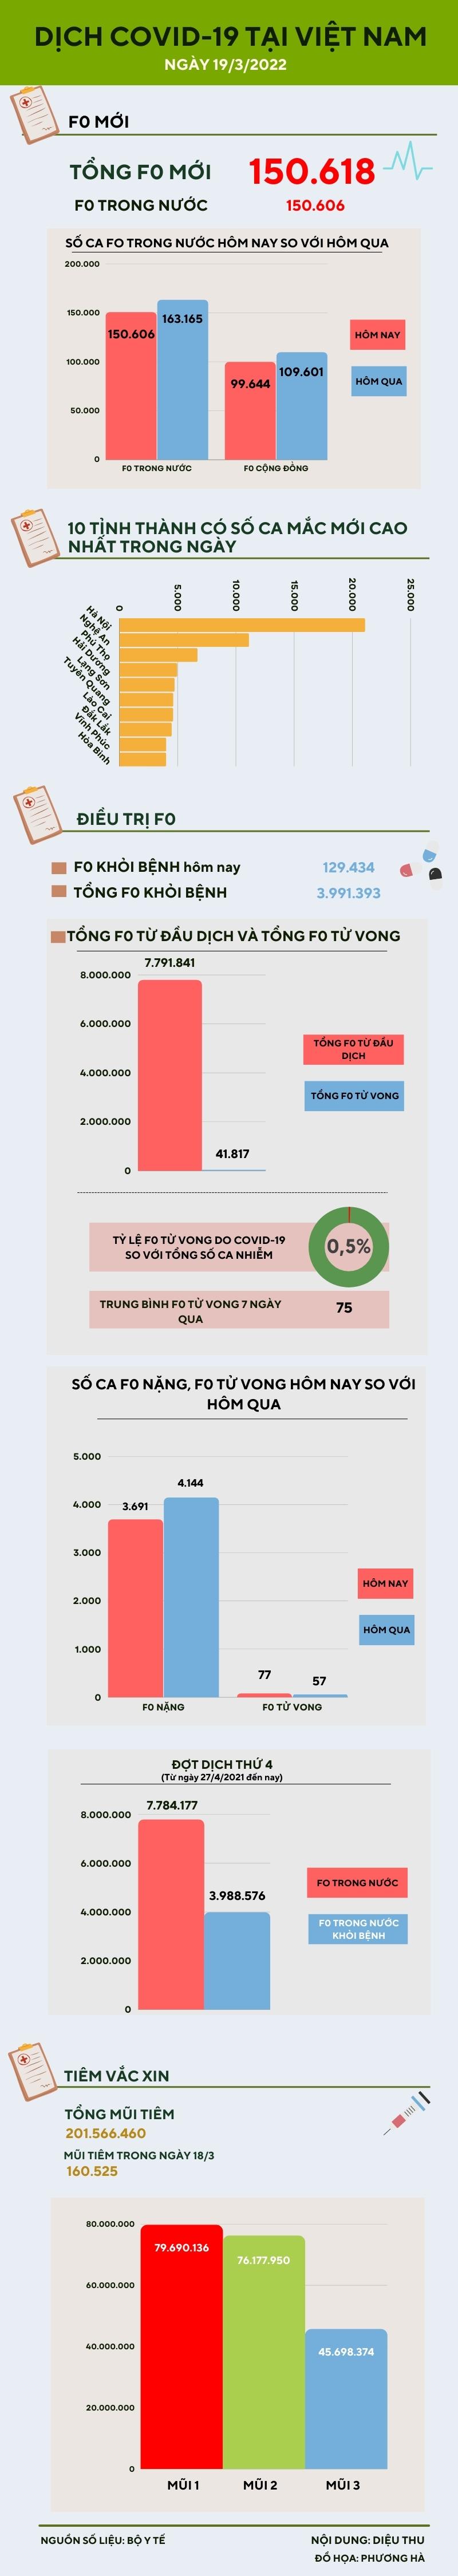 Ngày 19/3: Ghi nhận 150.606 ca COVID-19 trong nước, Hà Nội bổ sung 190.000 ca - 1